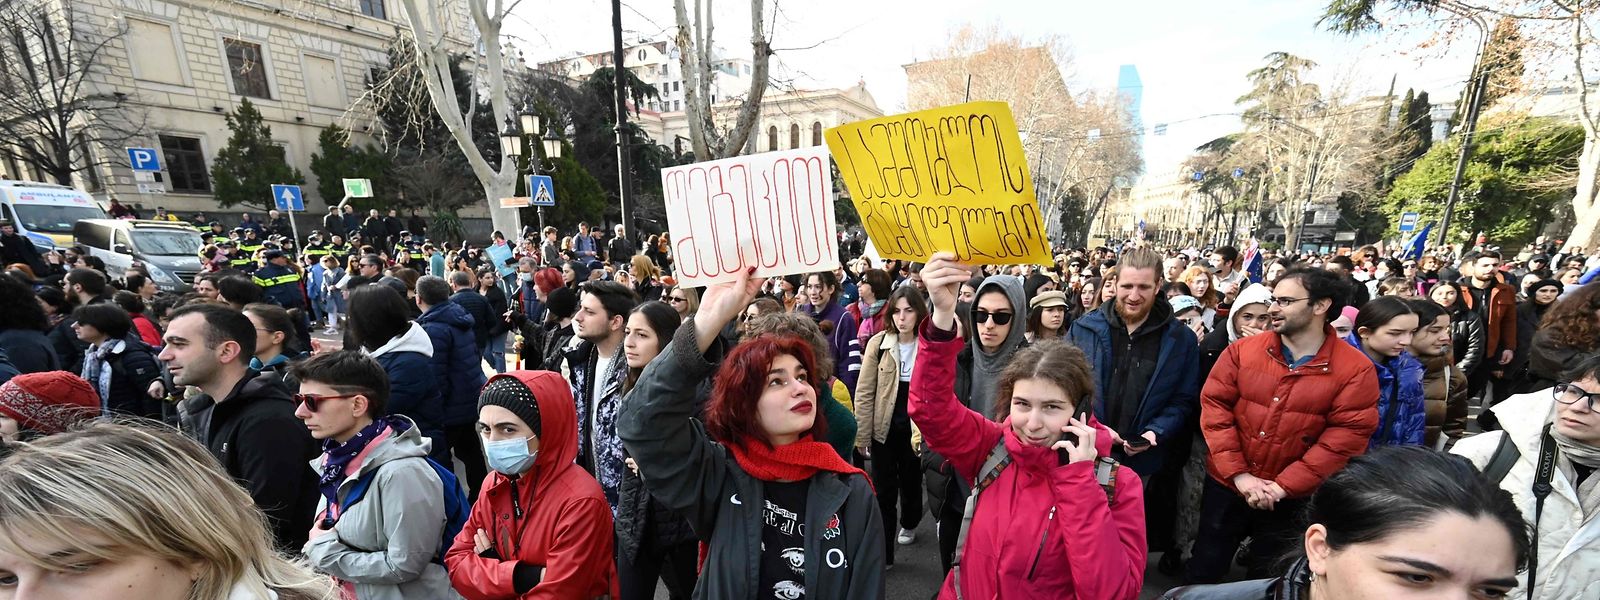 Am Mittwoch gingen erneut Tausende Menschen in Tiflis gegen zwei umstrittene Gesetzesvorhaben auf die Straße.